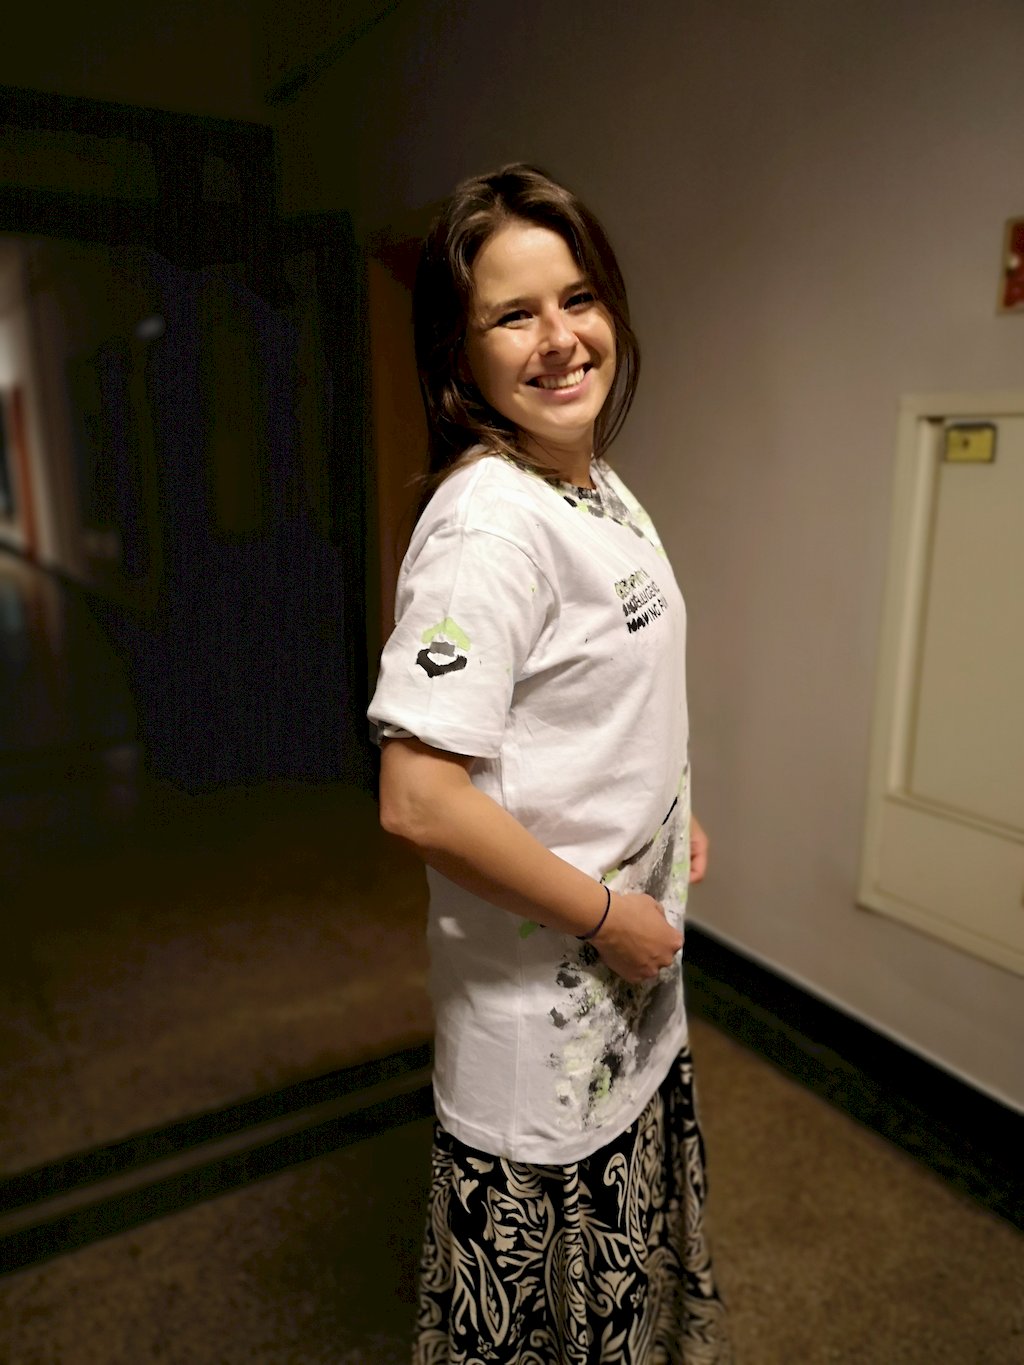 Młoda kobieta stojąca na korytarzu budynku prezentuje koszulke z wymalowanym na krótkim rękawku logo WILIGZ.